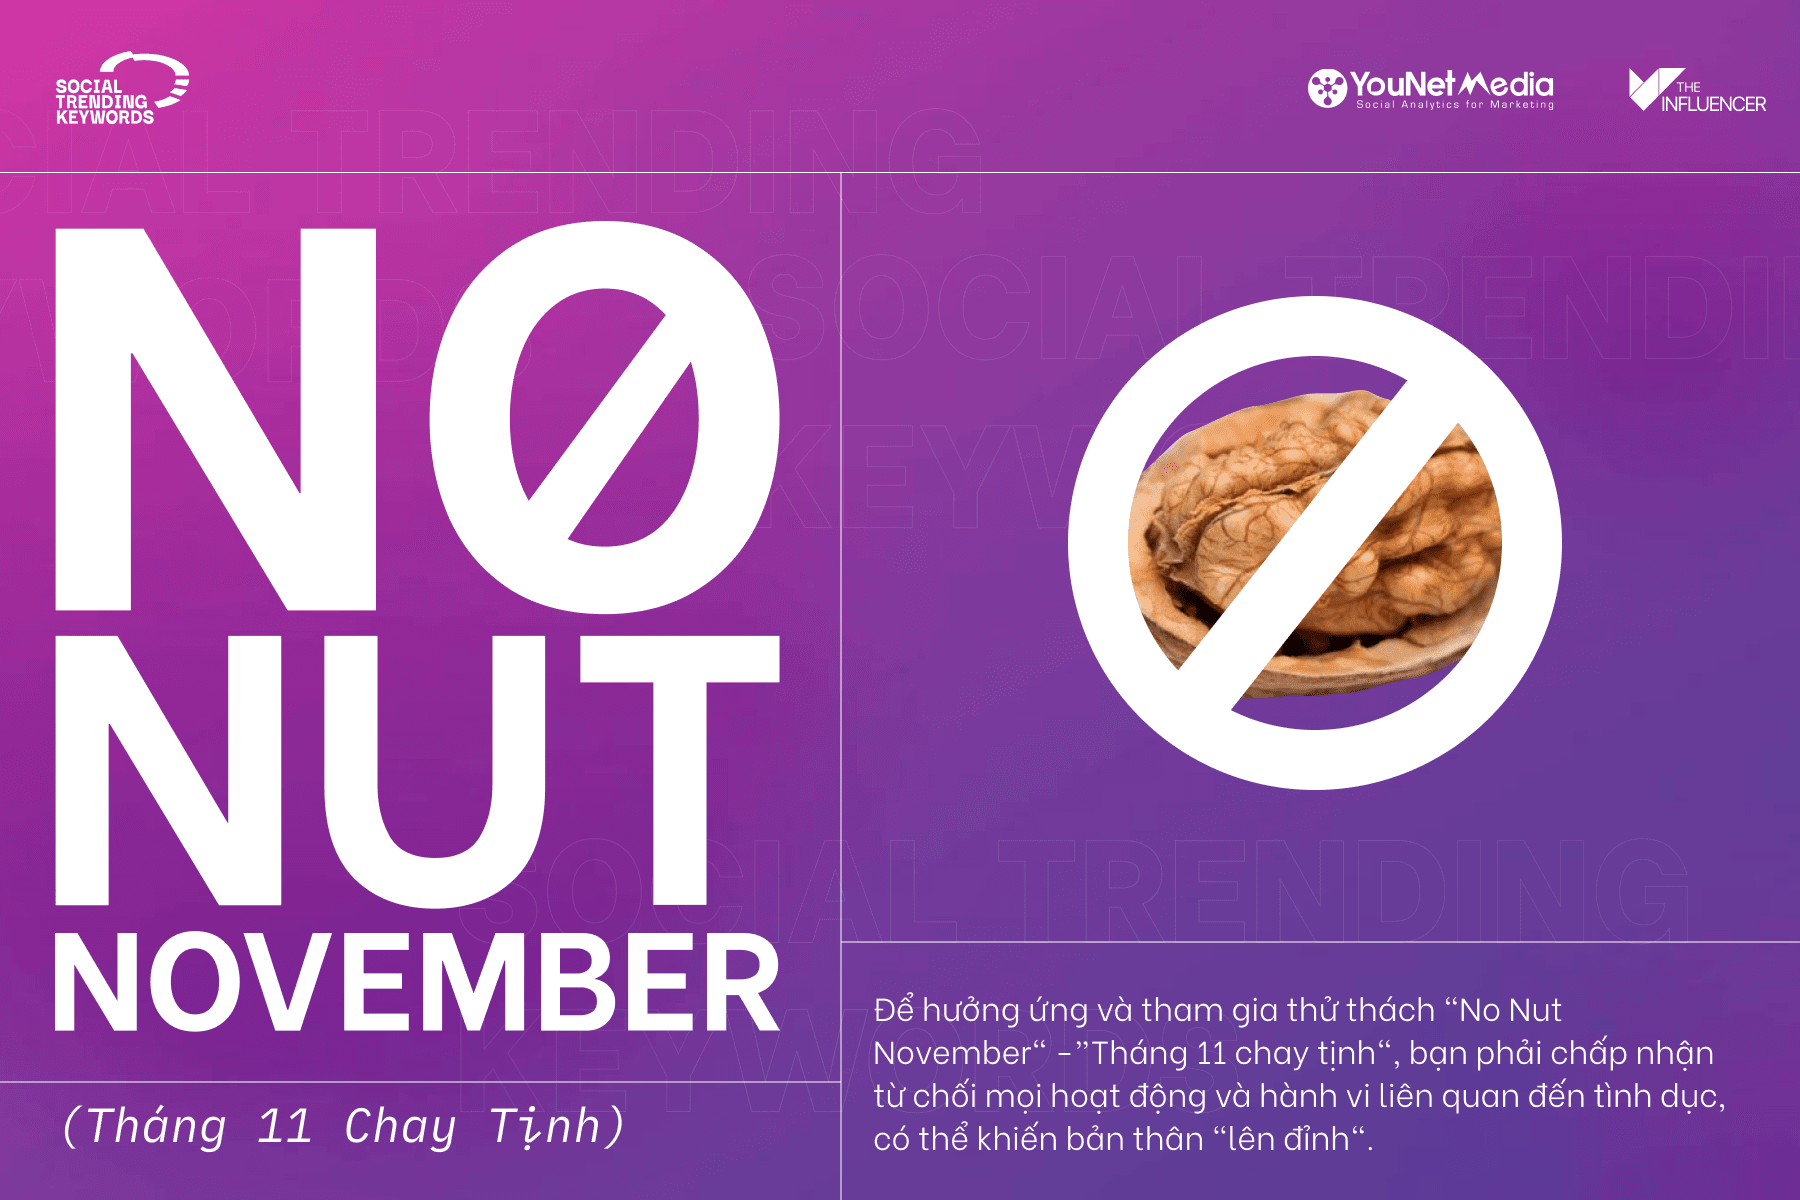 #SocialTrendingKeywords: No Nut November - Tháng 11 tới rồi, cùng nhau “chay tịnh” thôi!